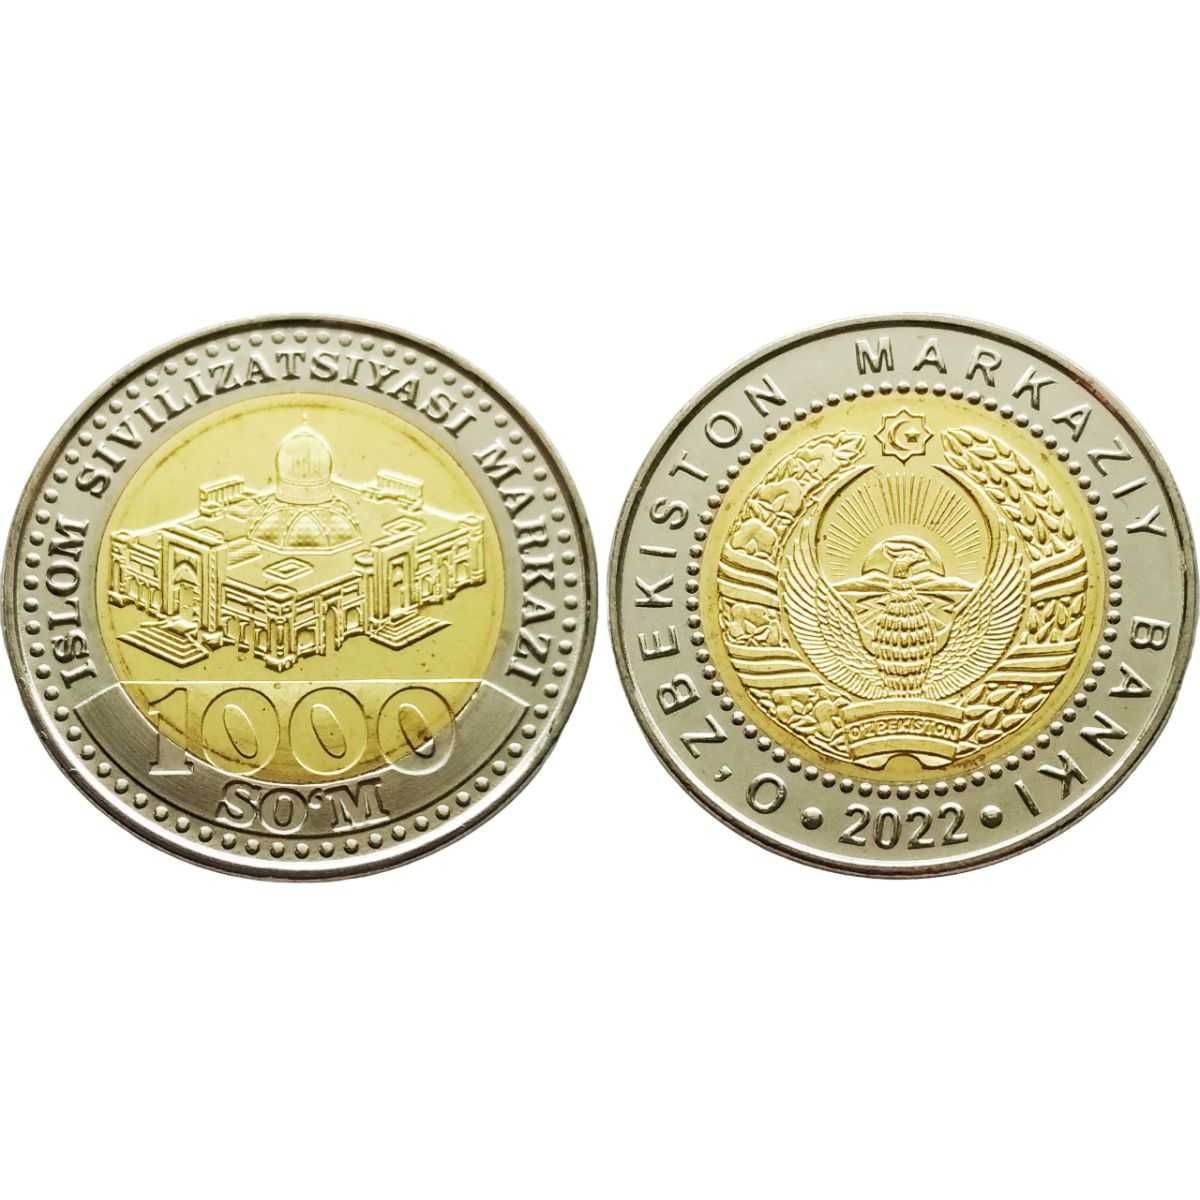 Полный набор монет Узбекистана